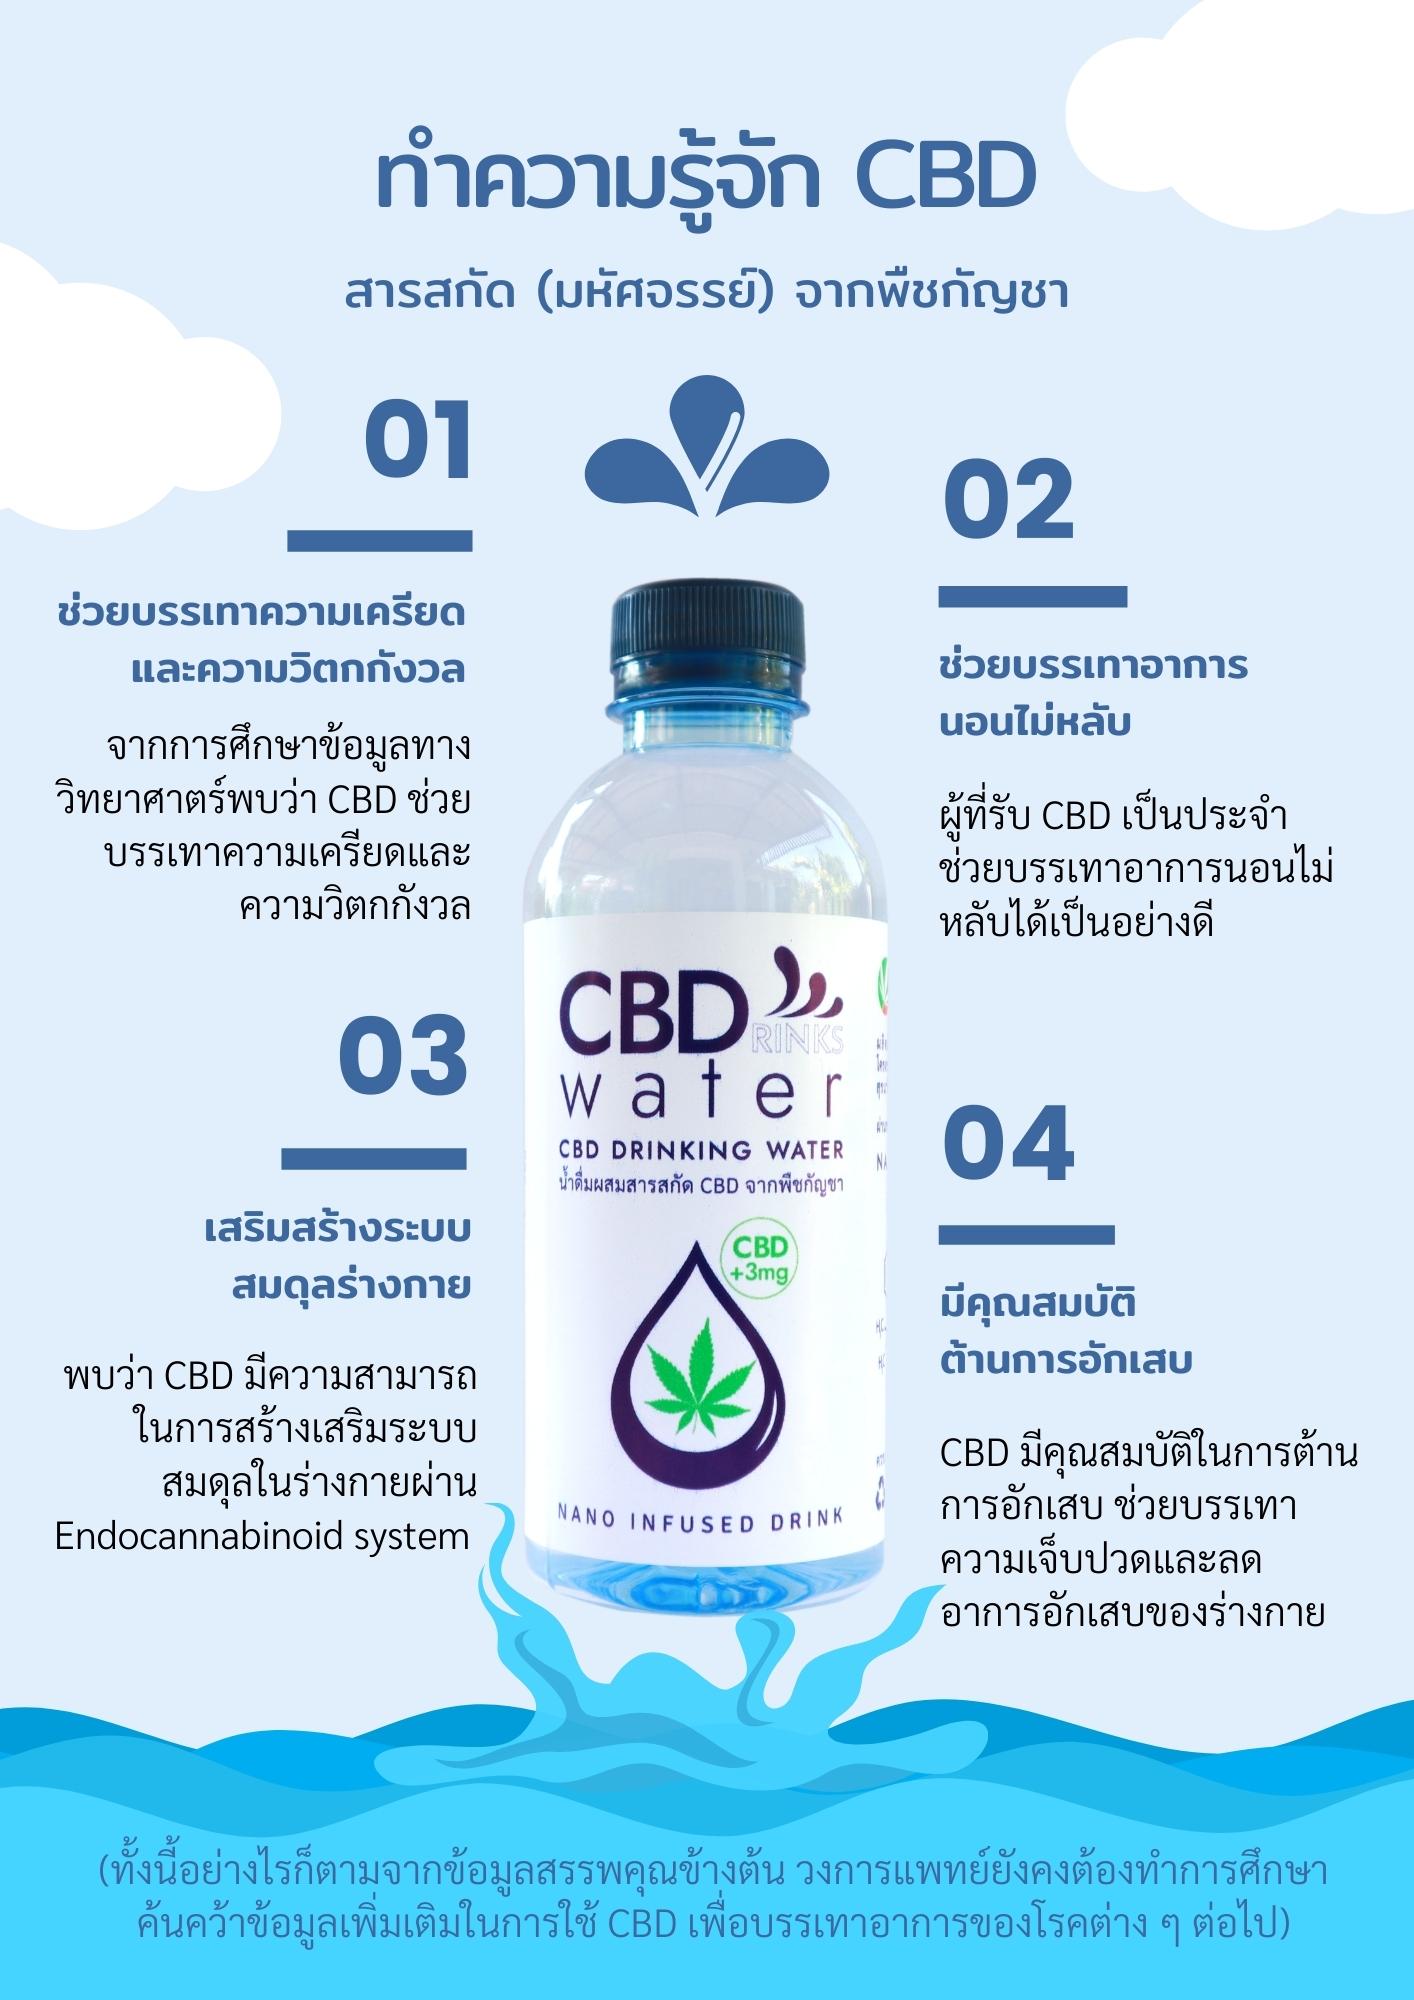 CBD water benefits